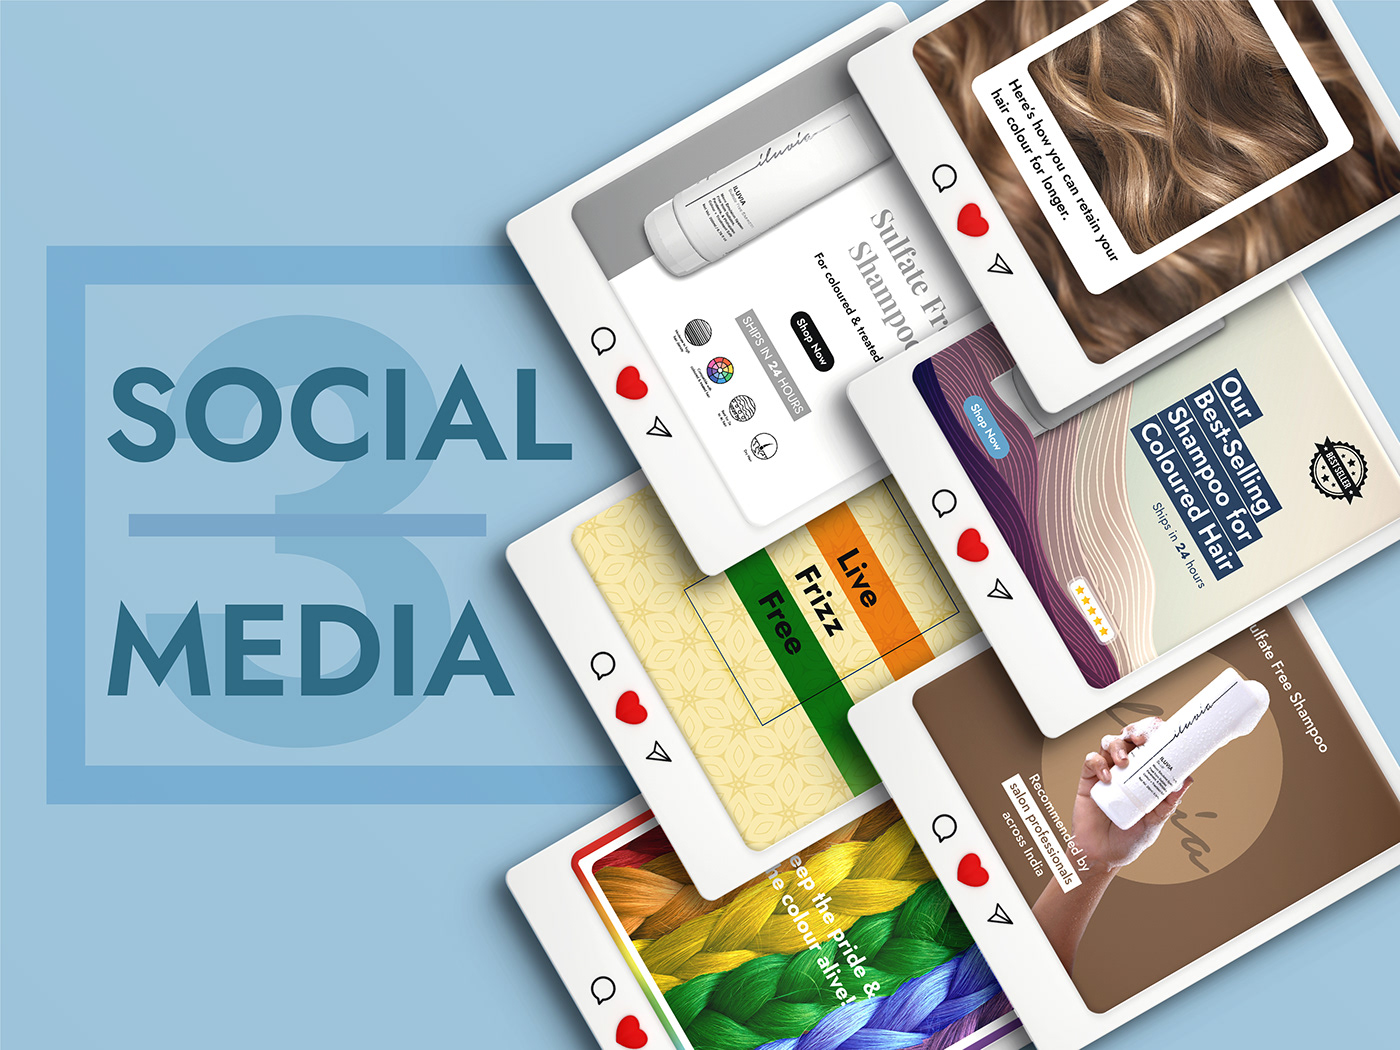 ads Instagram Post marketing digital social media Social Media Design social media marketing Social media post Socialmedia